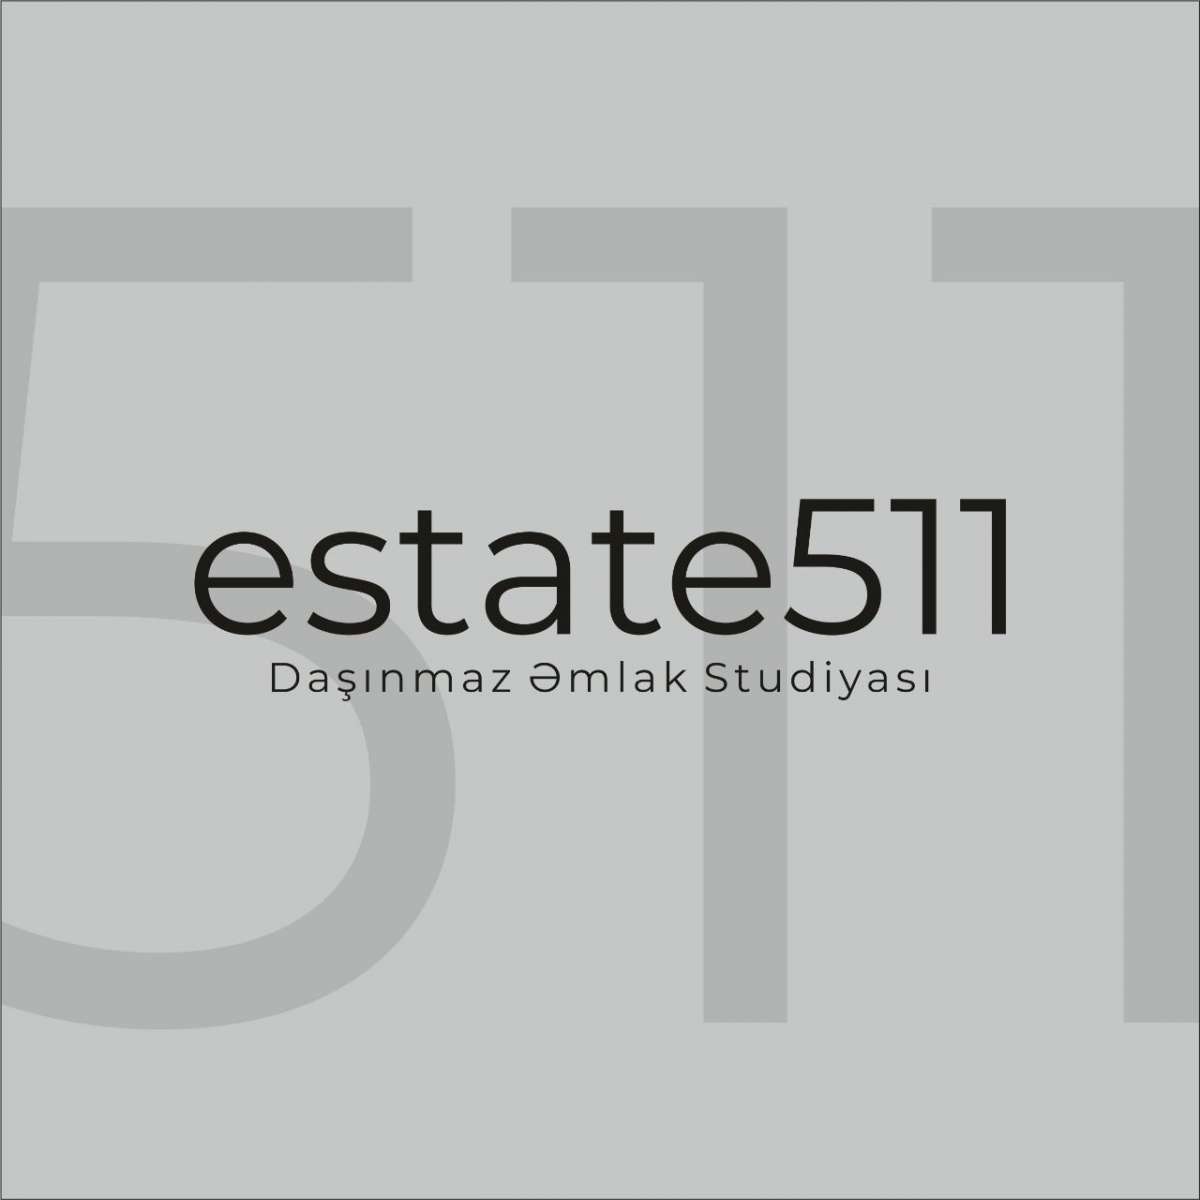 Estate 511 daşınmaz əmlak agentliyi